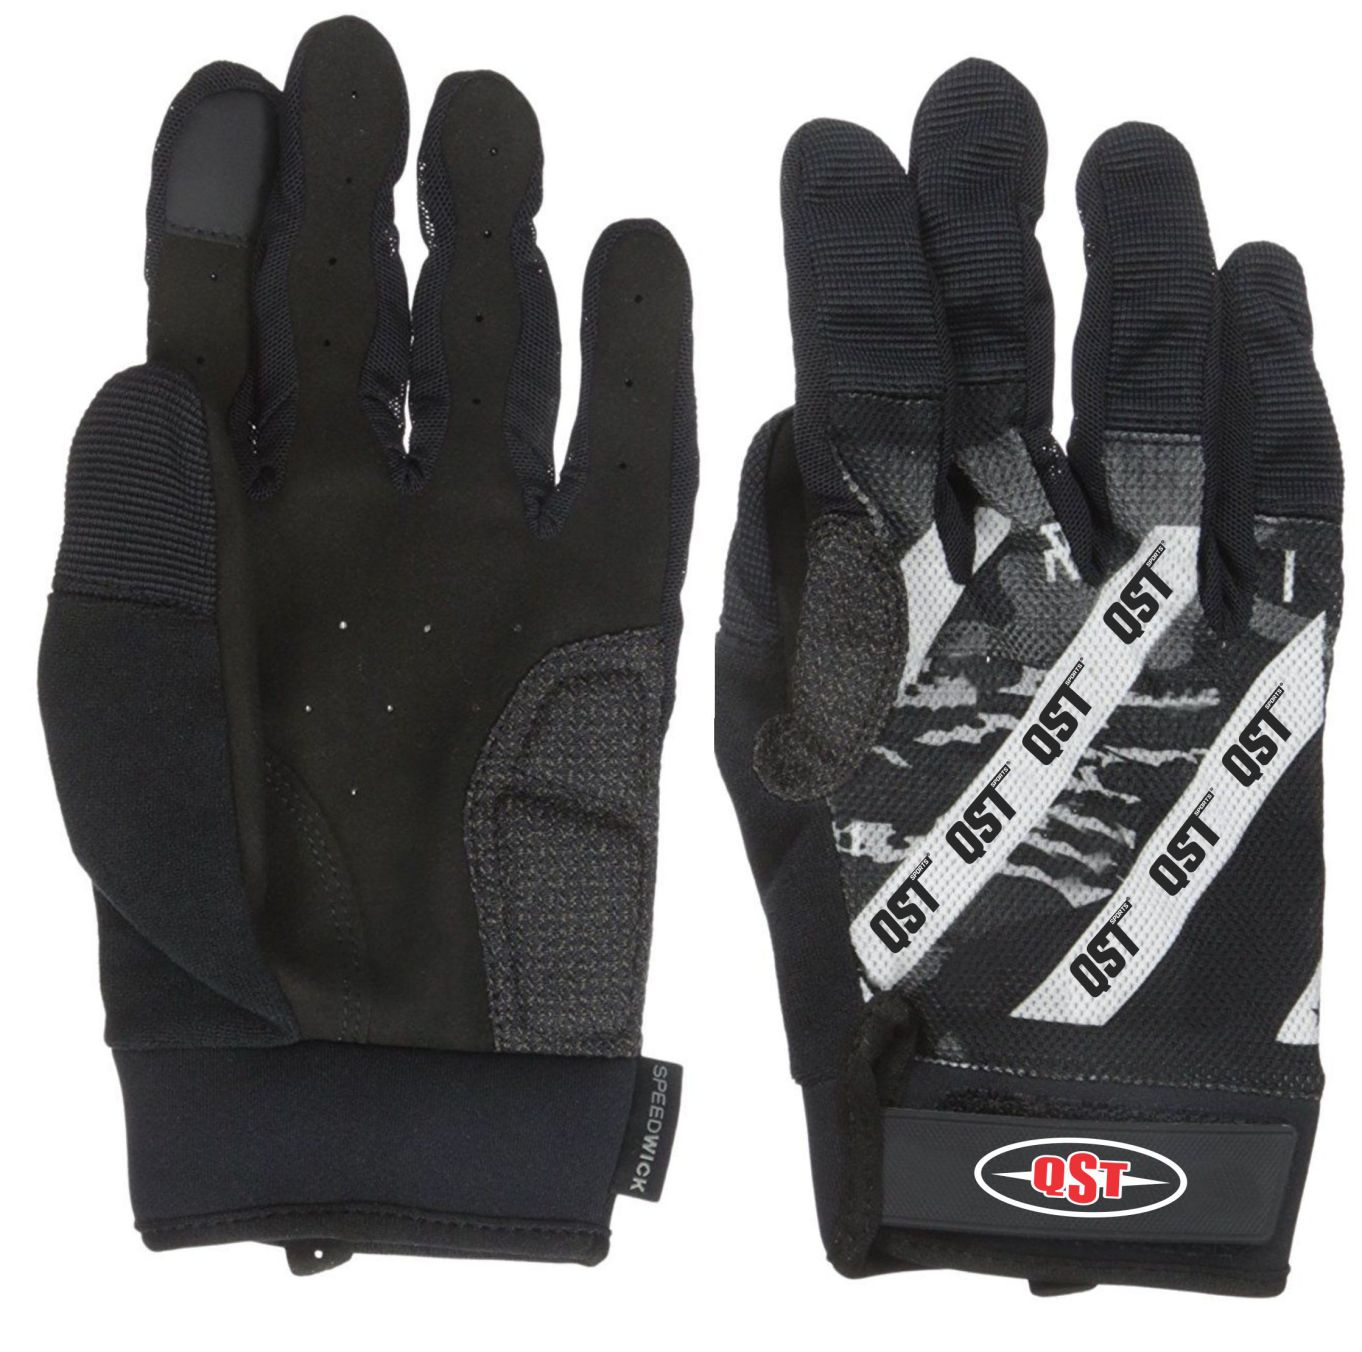 Full finger Gloves - ACS-1561